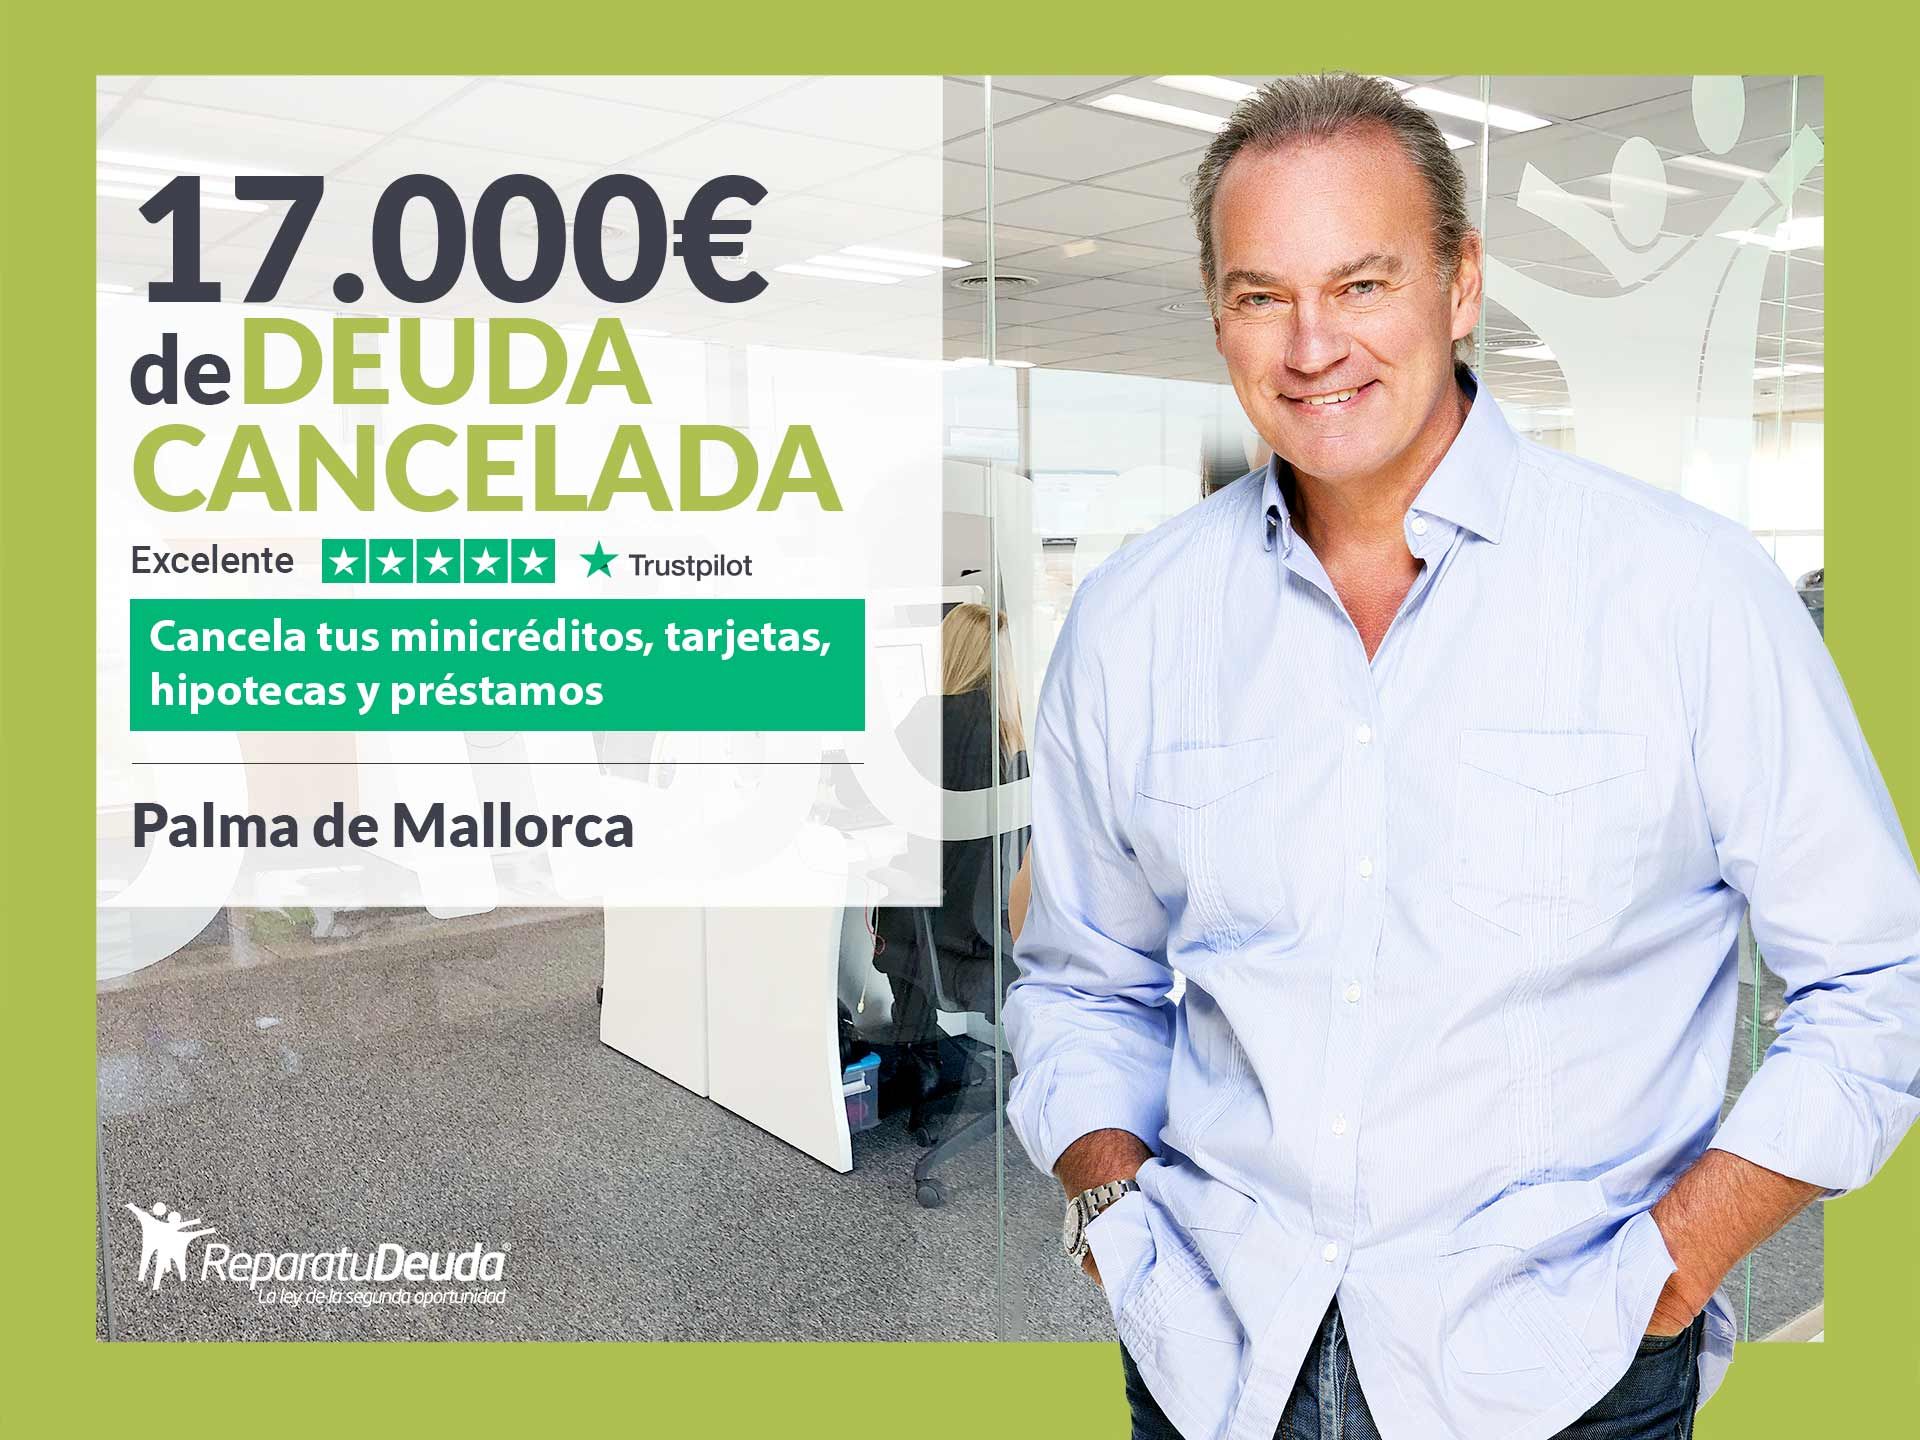 Repara tu Deuda Abogados cancela 17.000? en Mallorca (Baleares) con la Ley de la Segunda Oportunidad